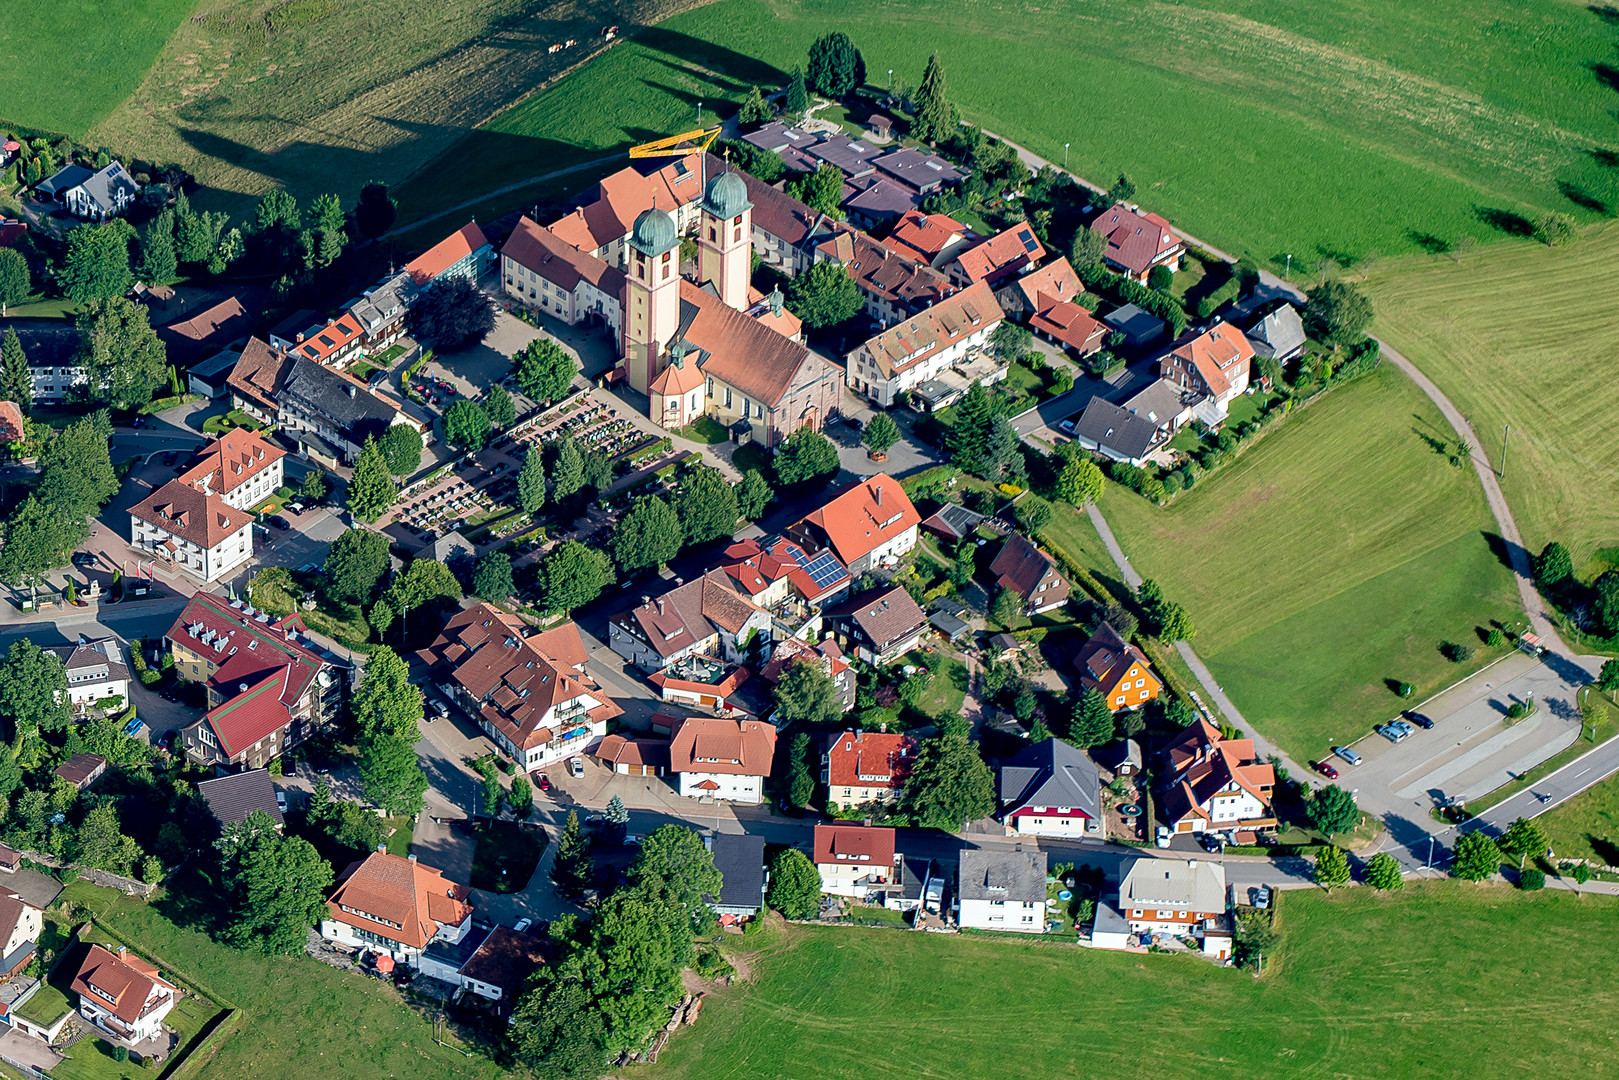 Sankt Märgen mit Klosteranlage im Schwarzwald 